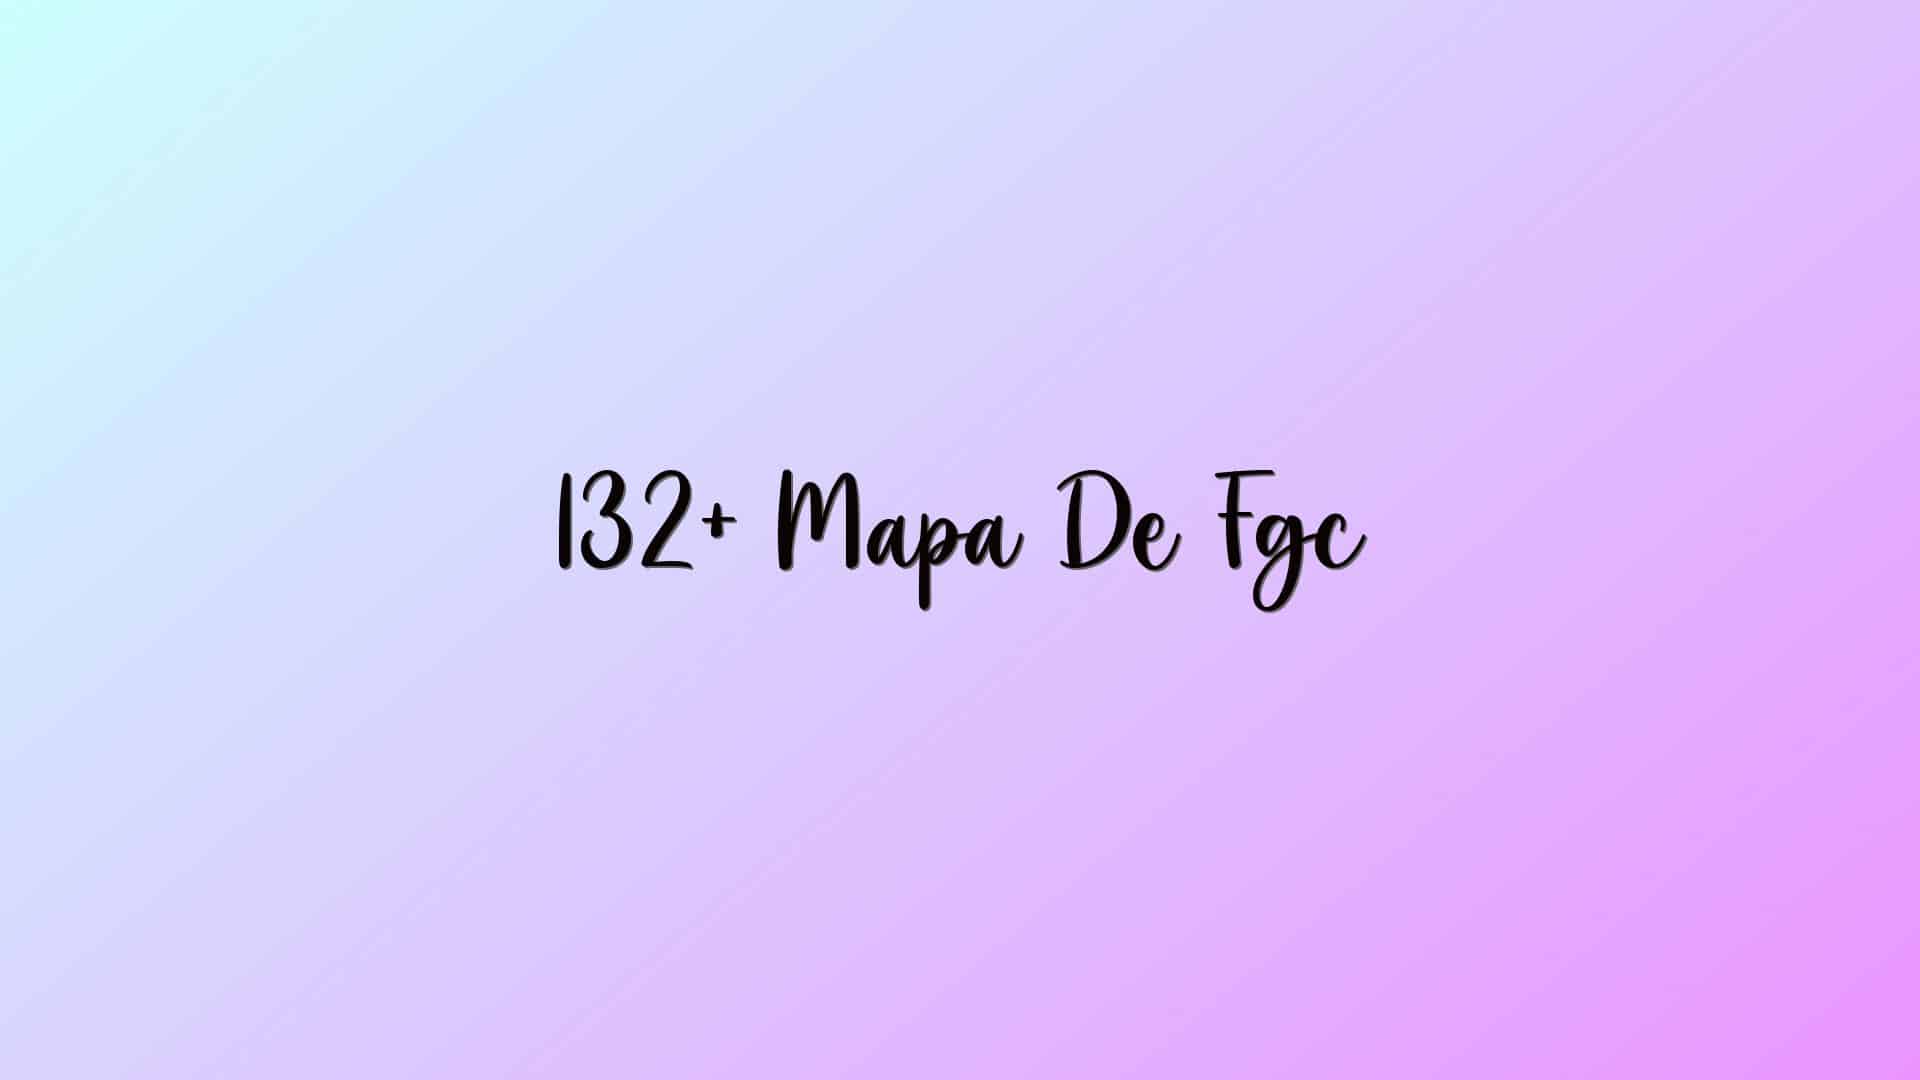 132+ Mapa De Fgc